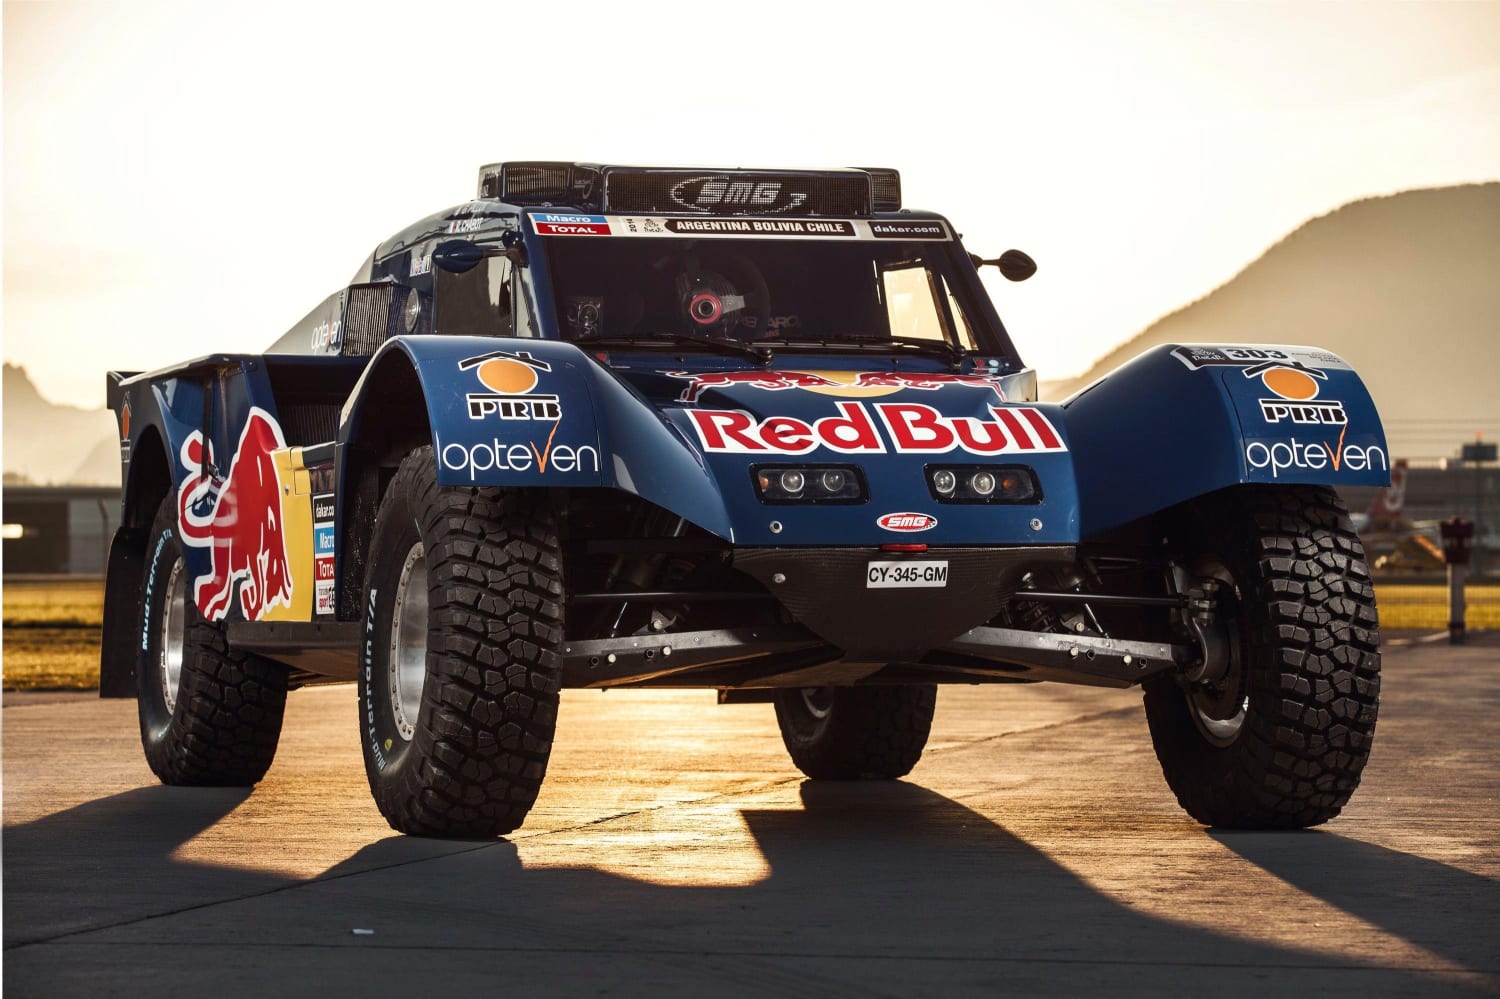 Le buggy de l'équipe Red Bull SMG mis à nu